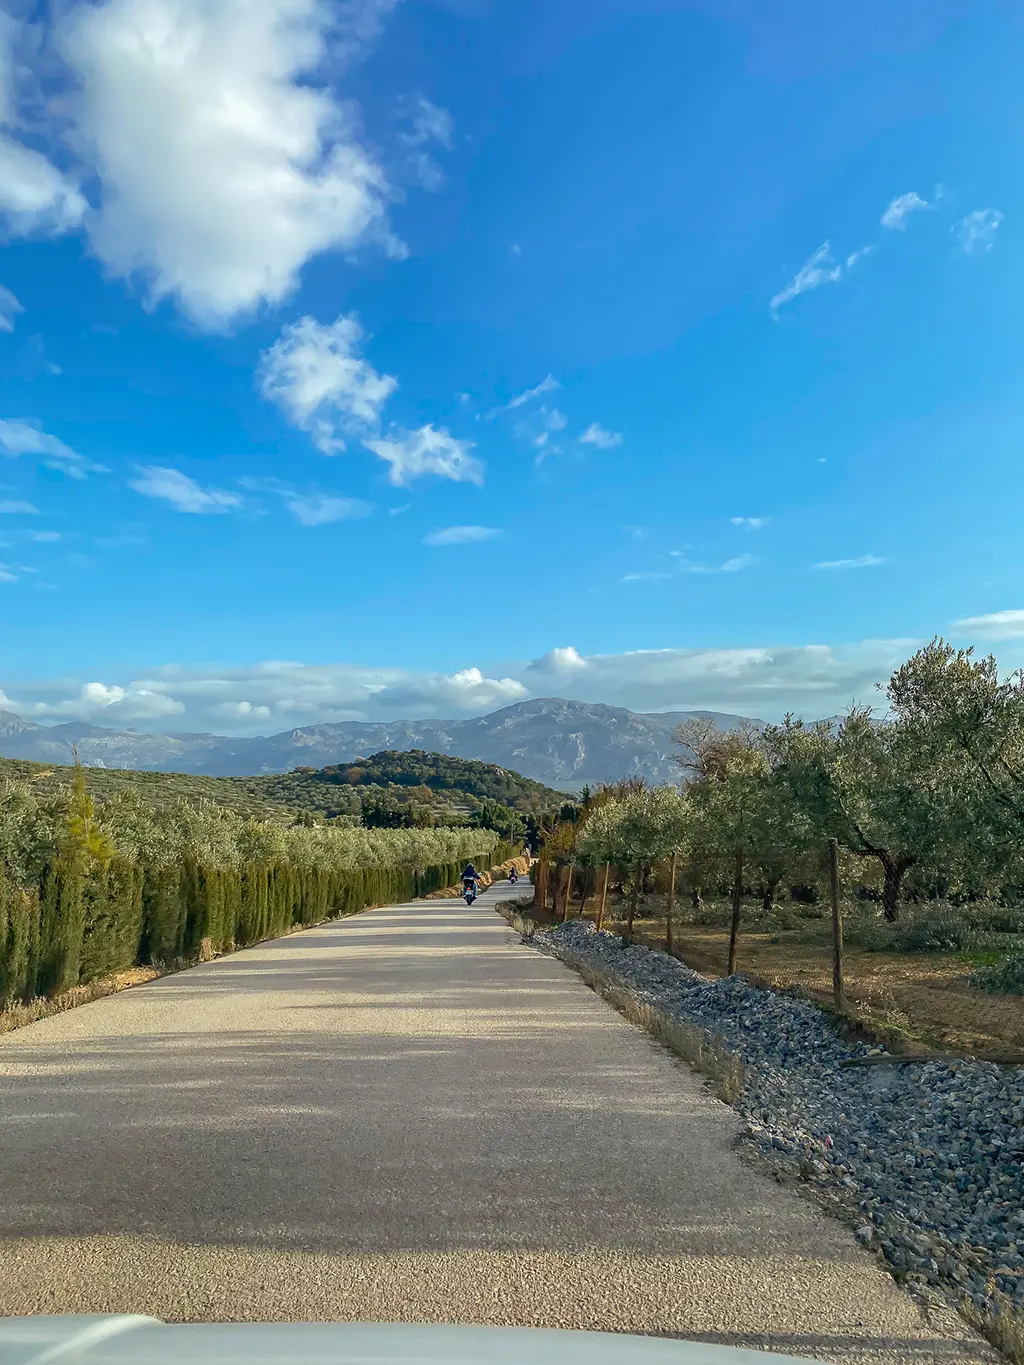 route bordée d'oliviers dans la province de Malaga